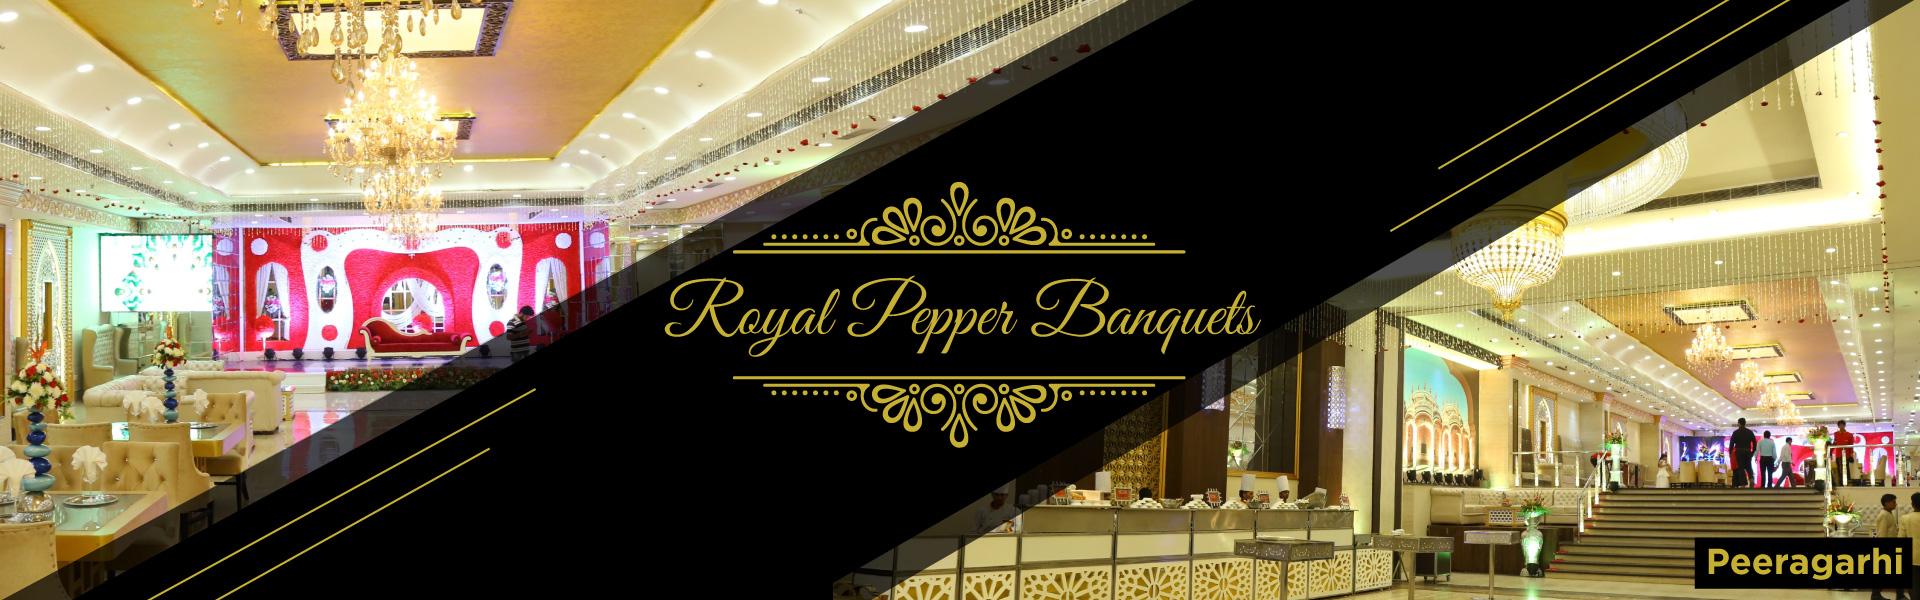 banquets in peeragarhi, Banquet Hall in peeragarhi, By Royal Pepper Banquets